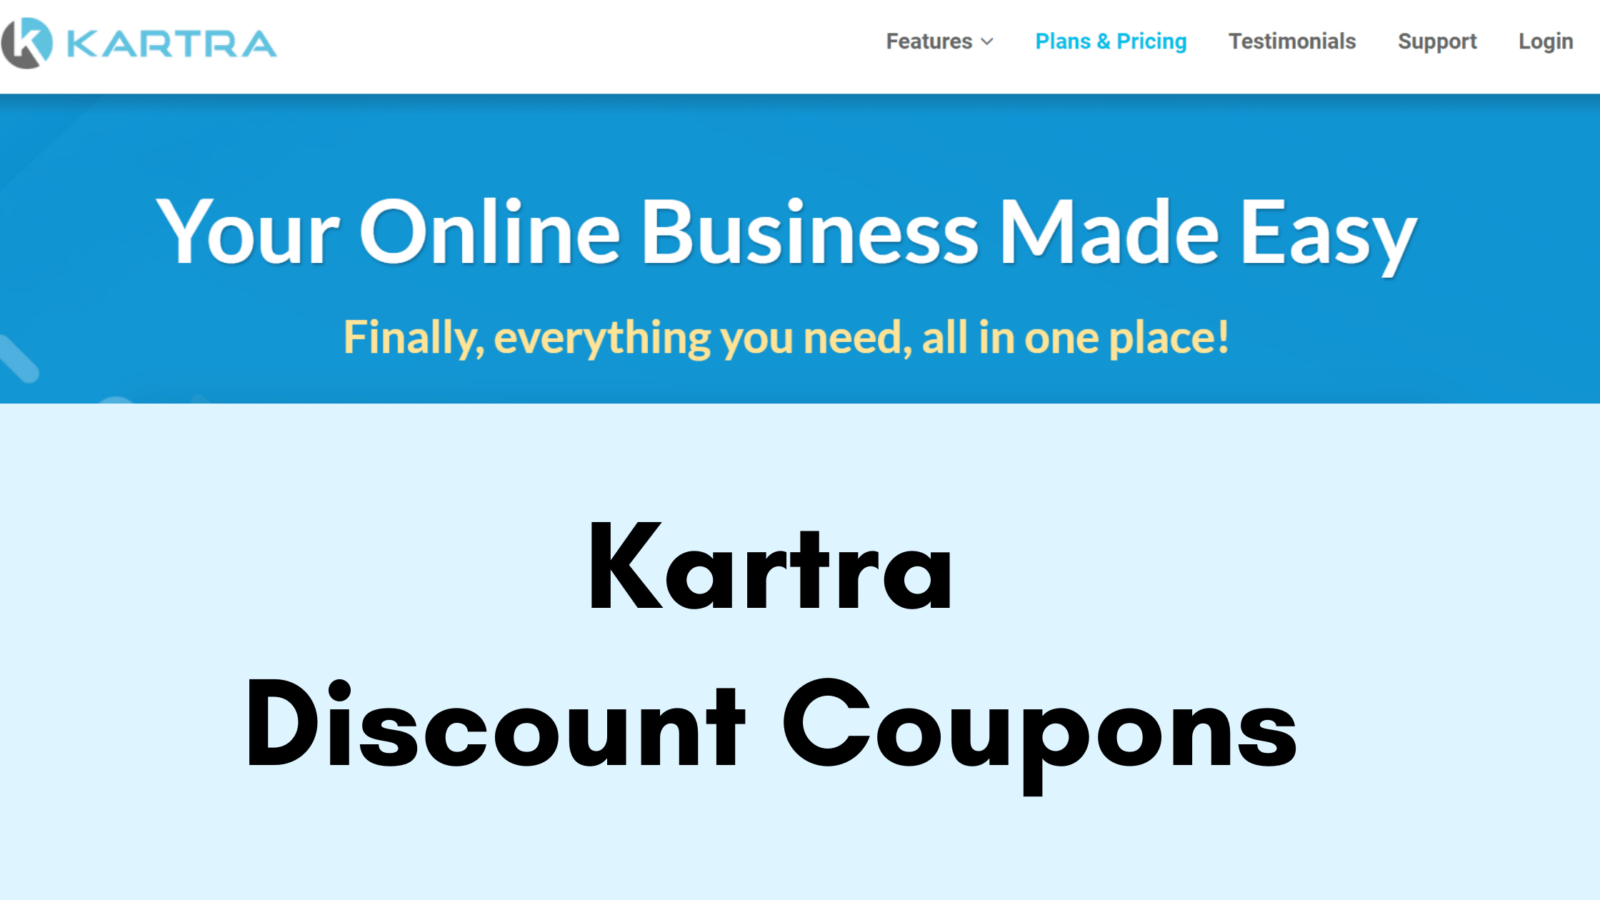 Kartra Discount Coupon 2022 - Get 25% Discount & Save $1440